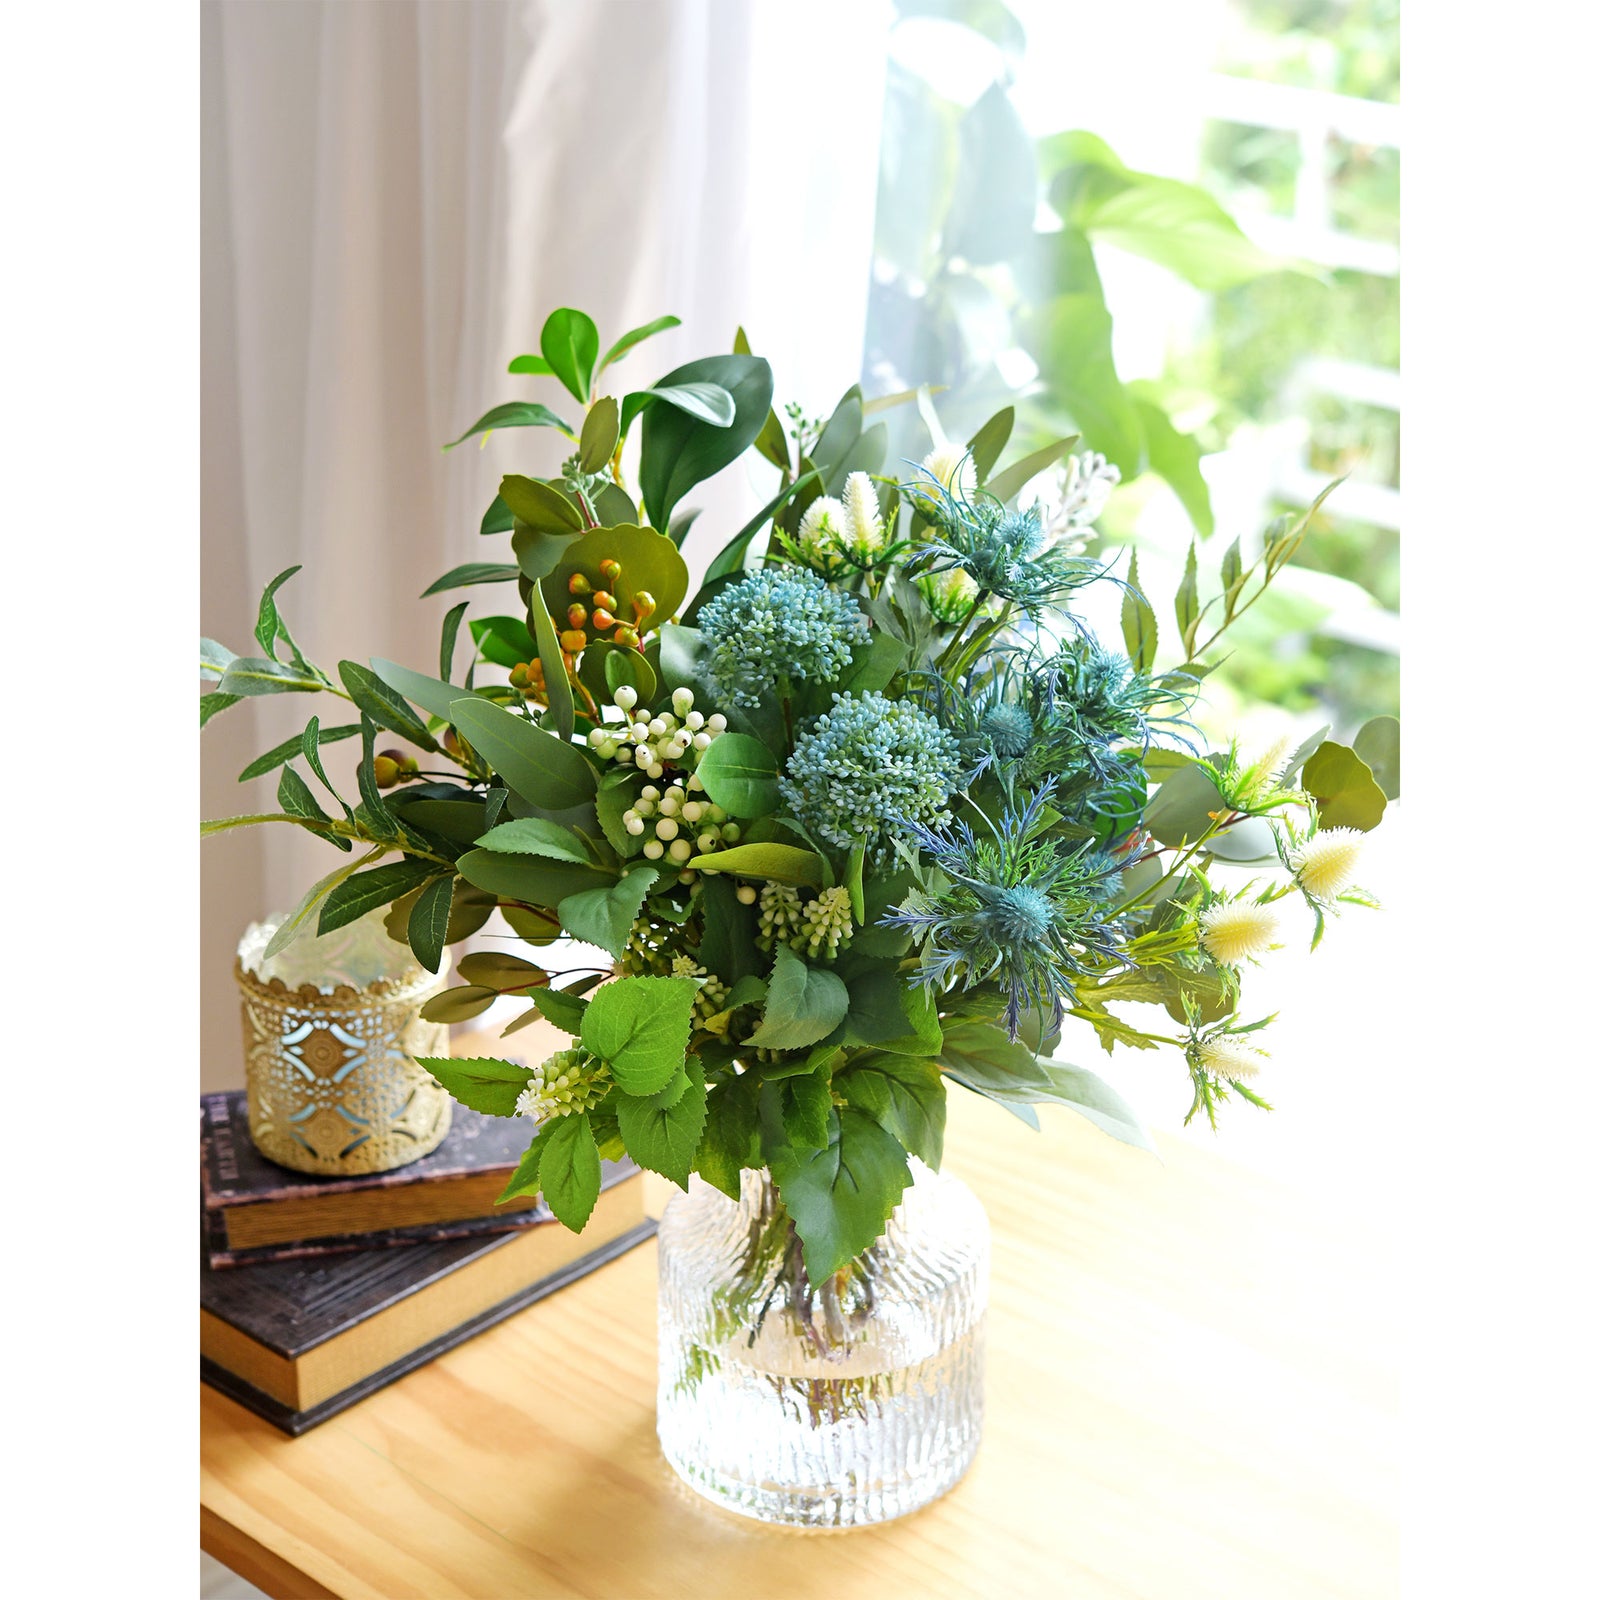 Viburnum (Waxy Blue) Long Stem Artificial Silk Flowers, Filler Flower, Wedding, Home Decor, Arrangment 6 Stems